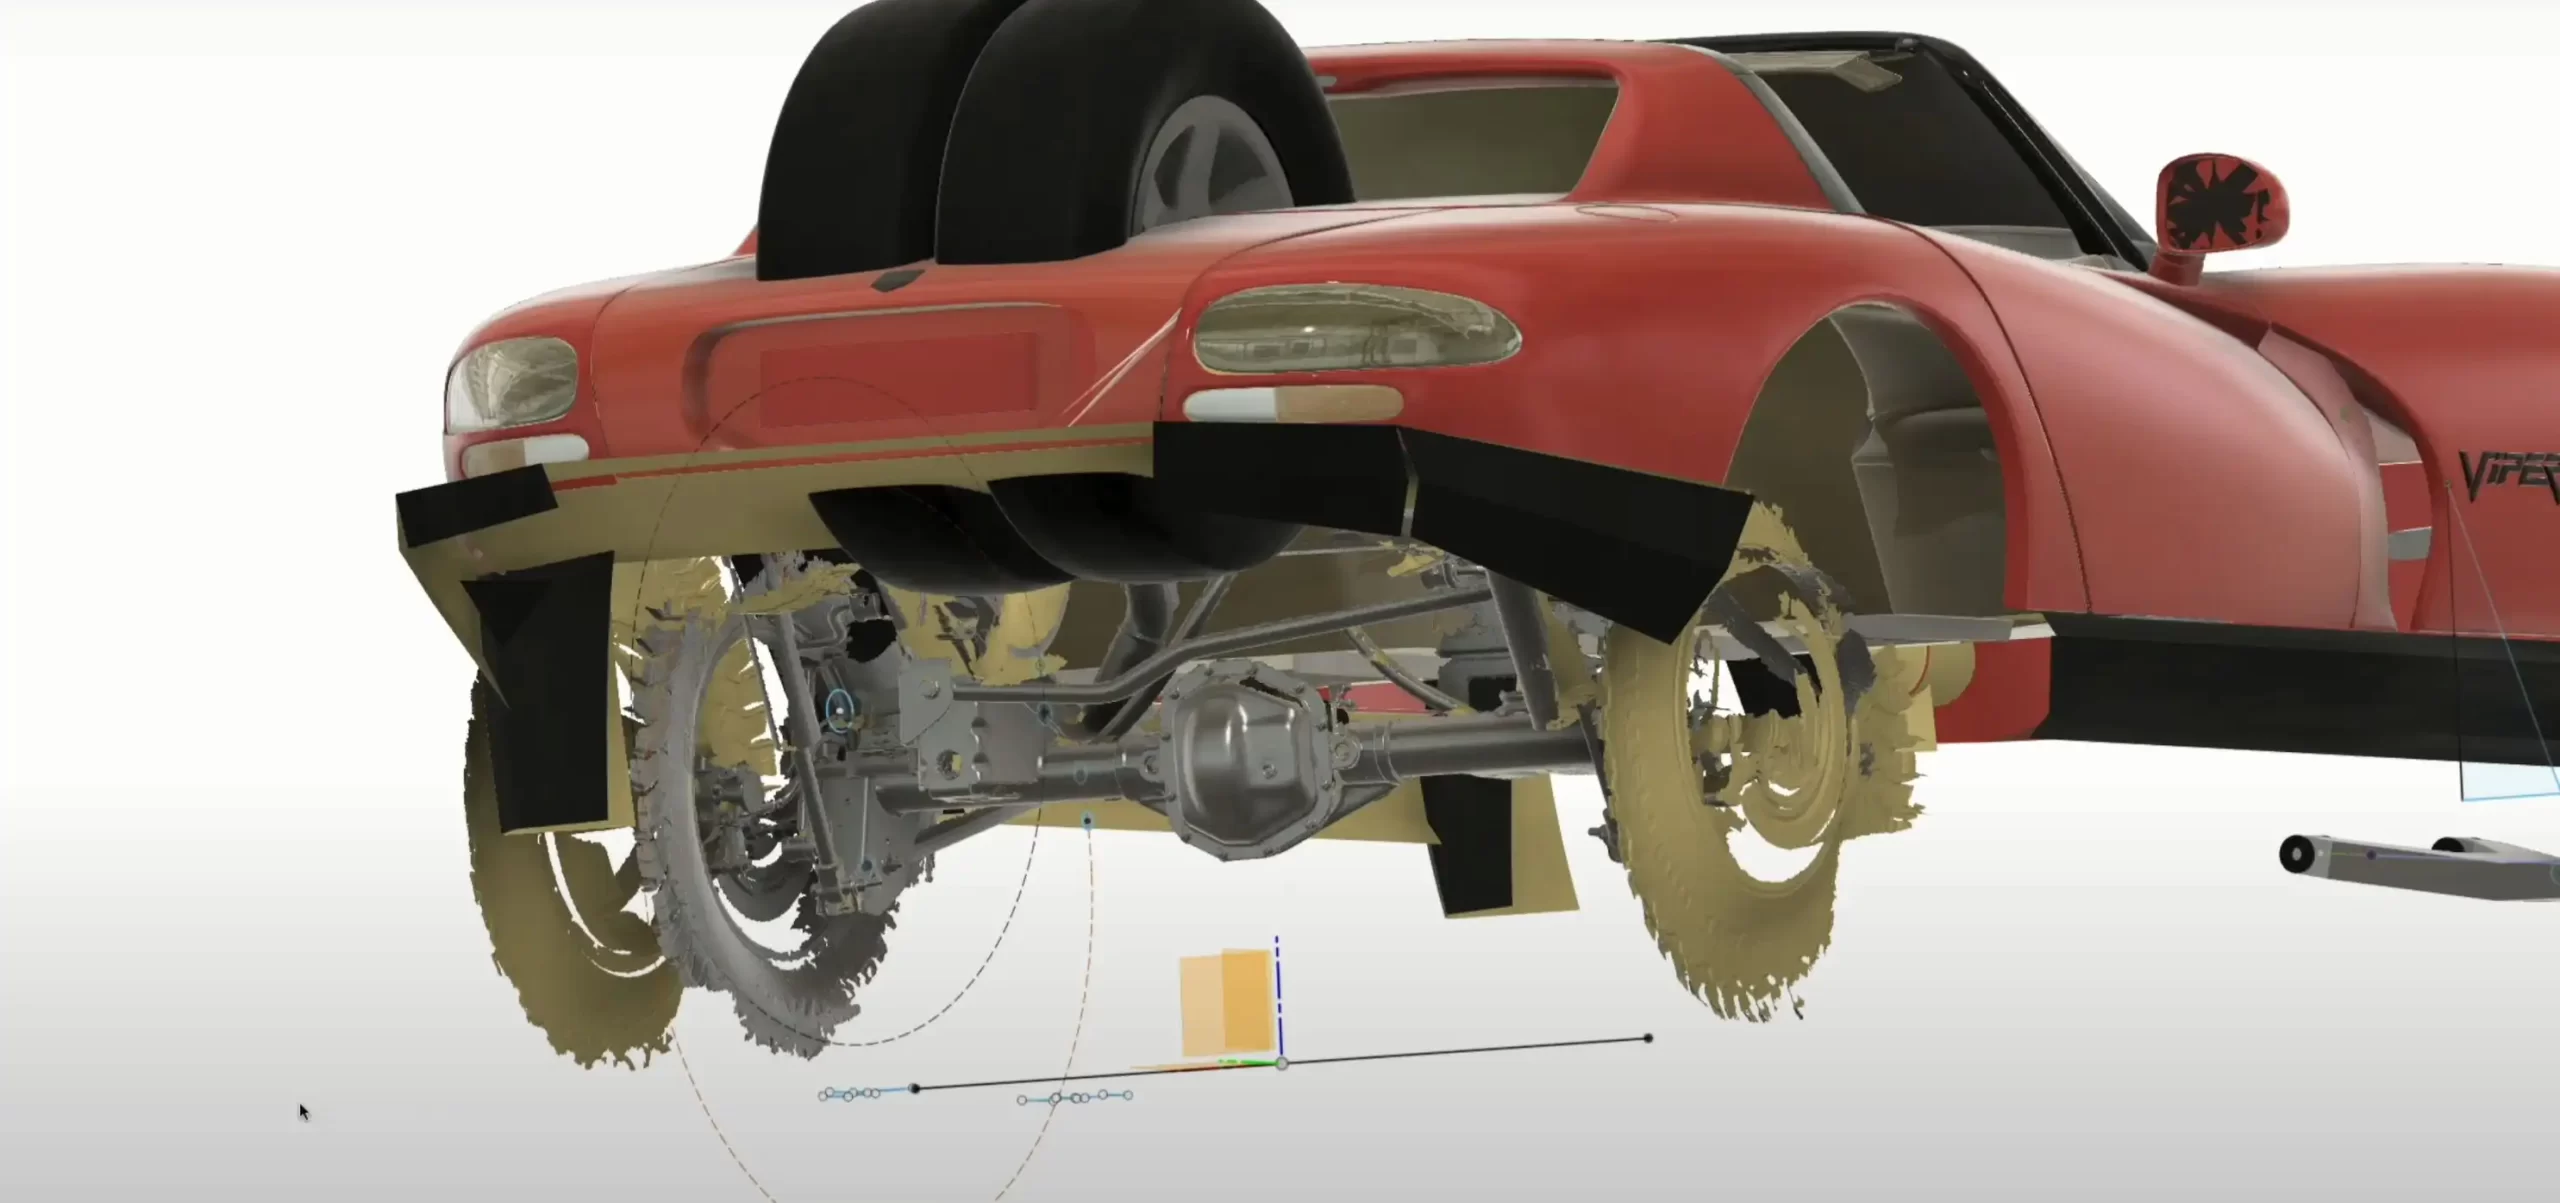 Pazzo fuoristrada Dodge Viper: progetto dell'ex ingegnere Tesla Matt Brown!